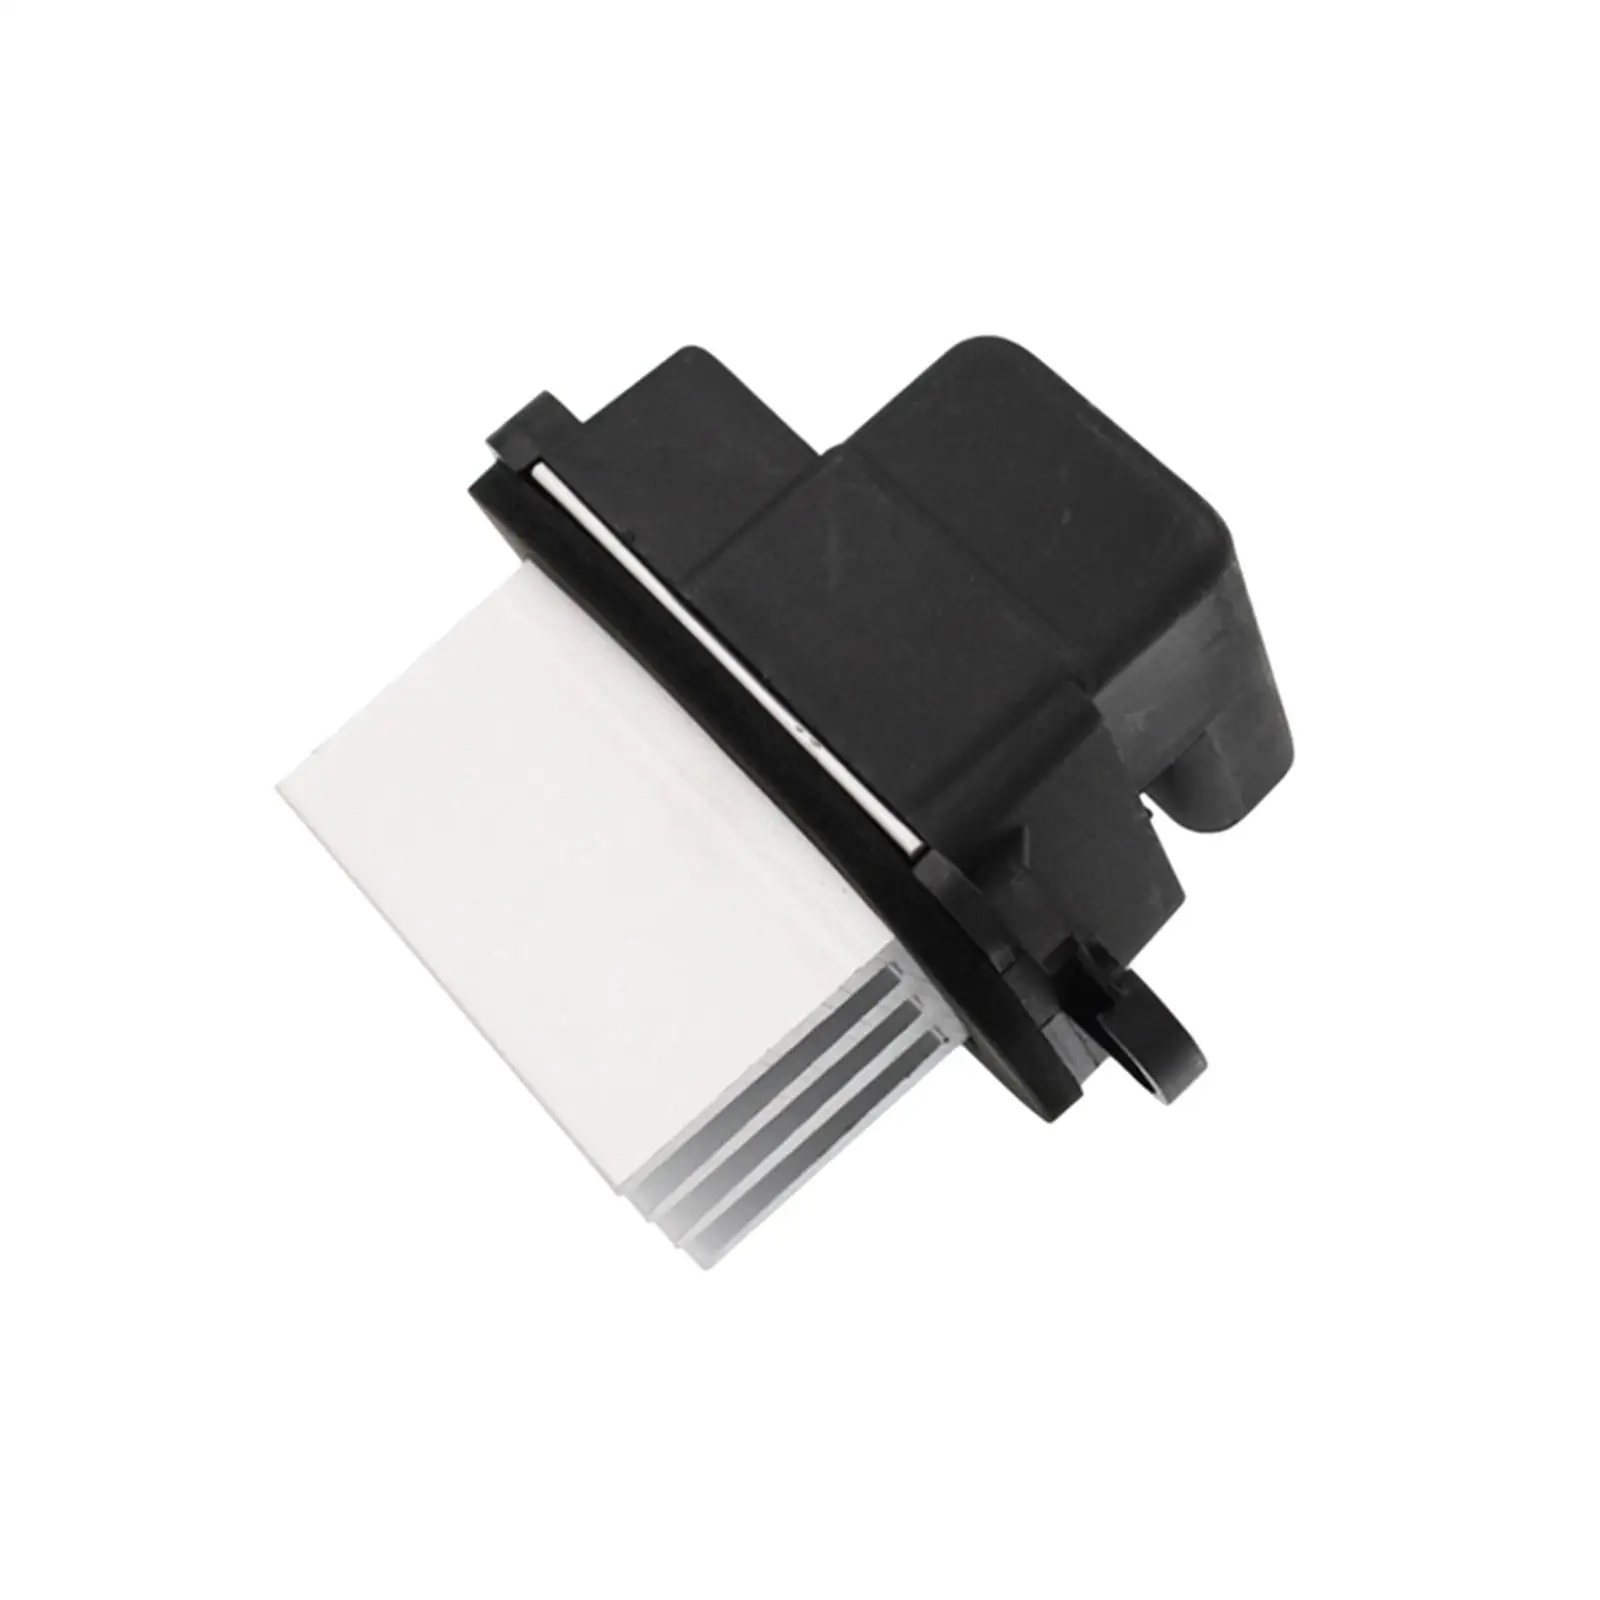 Replacement Blower Resistor 27151zt00A Durable Parts for Infiniti QX56 2004-2013 Convenient Assemble Automobile Accessory